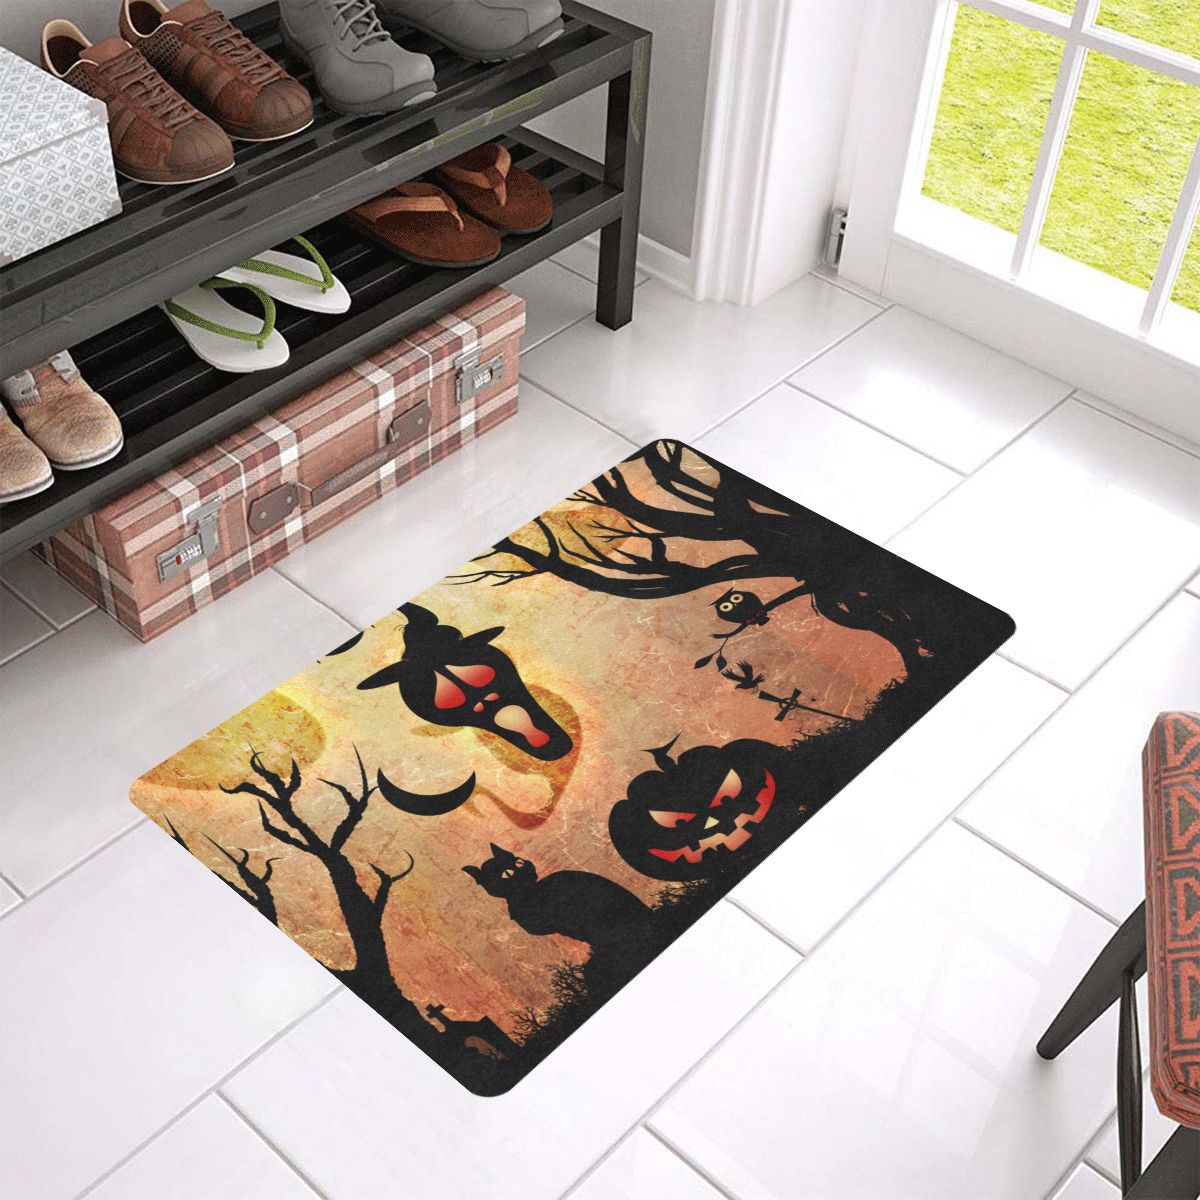 Funny halloween design Doormat 24"x16" (Black Base)